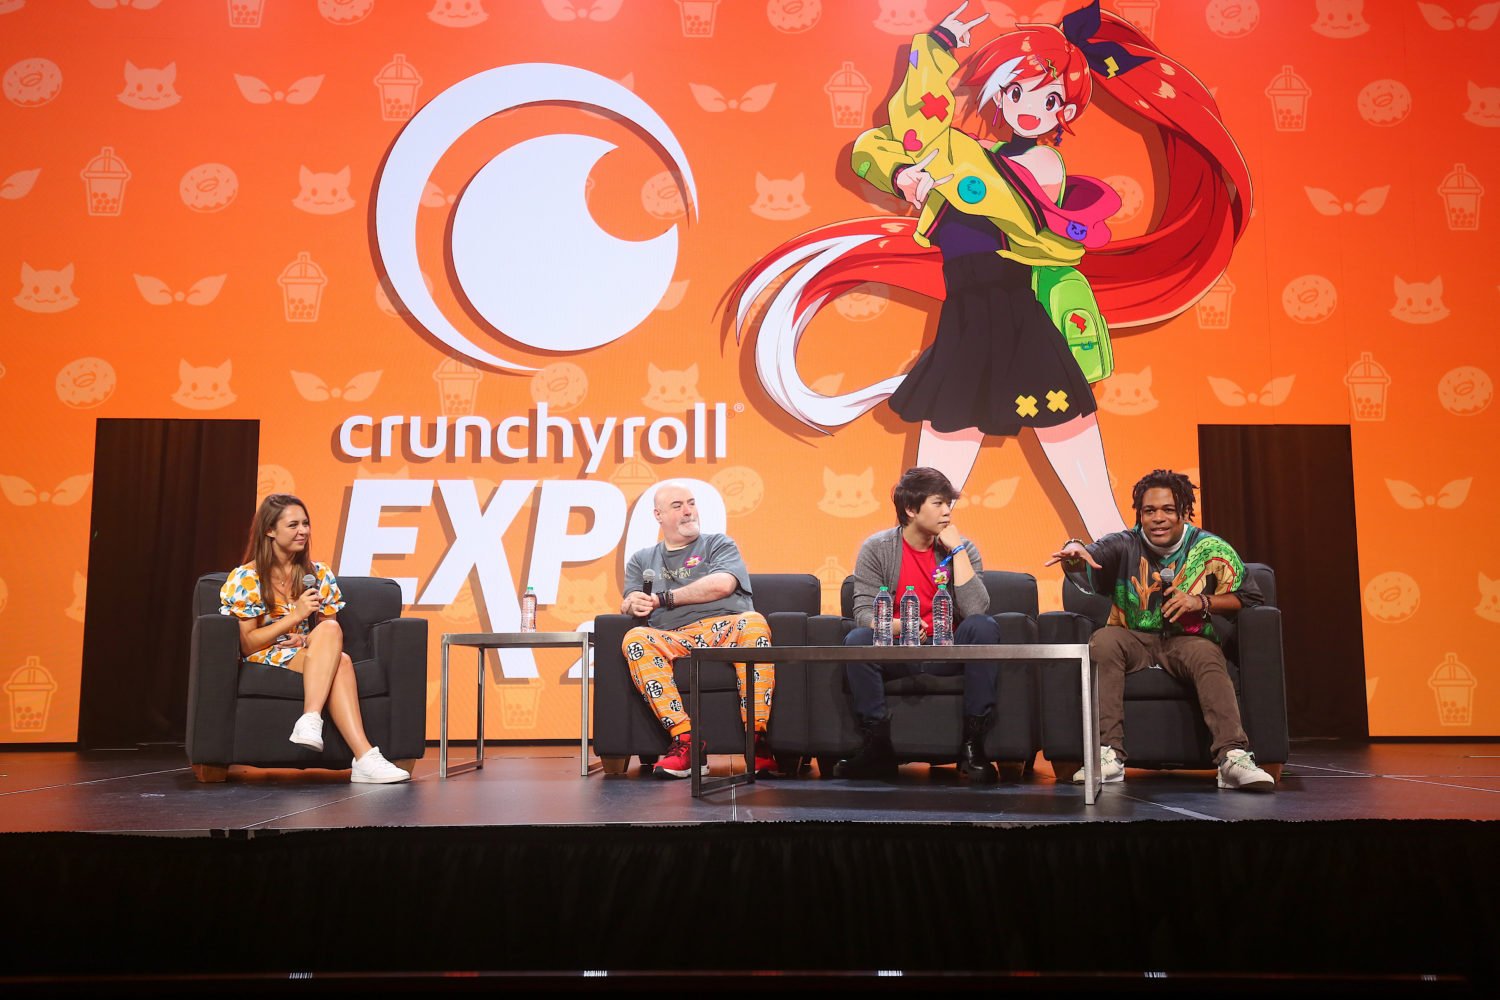 The Anime Zone em português brasileiro - Crunchyroll